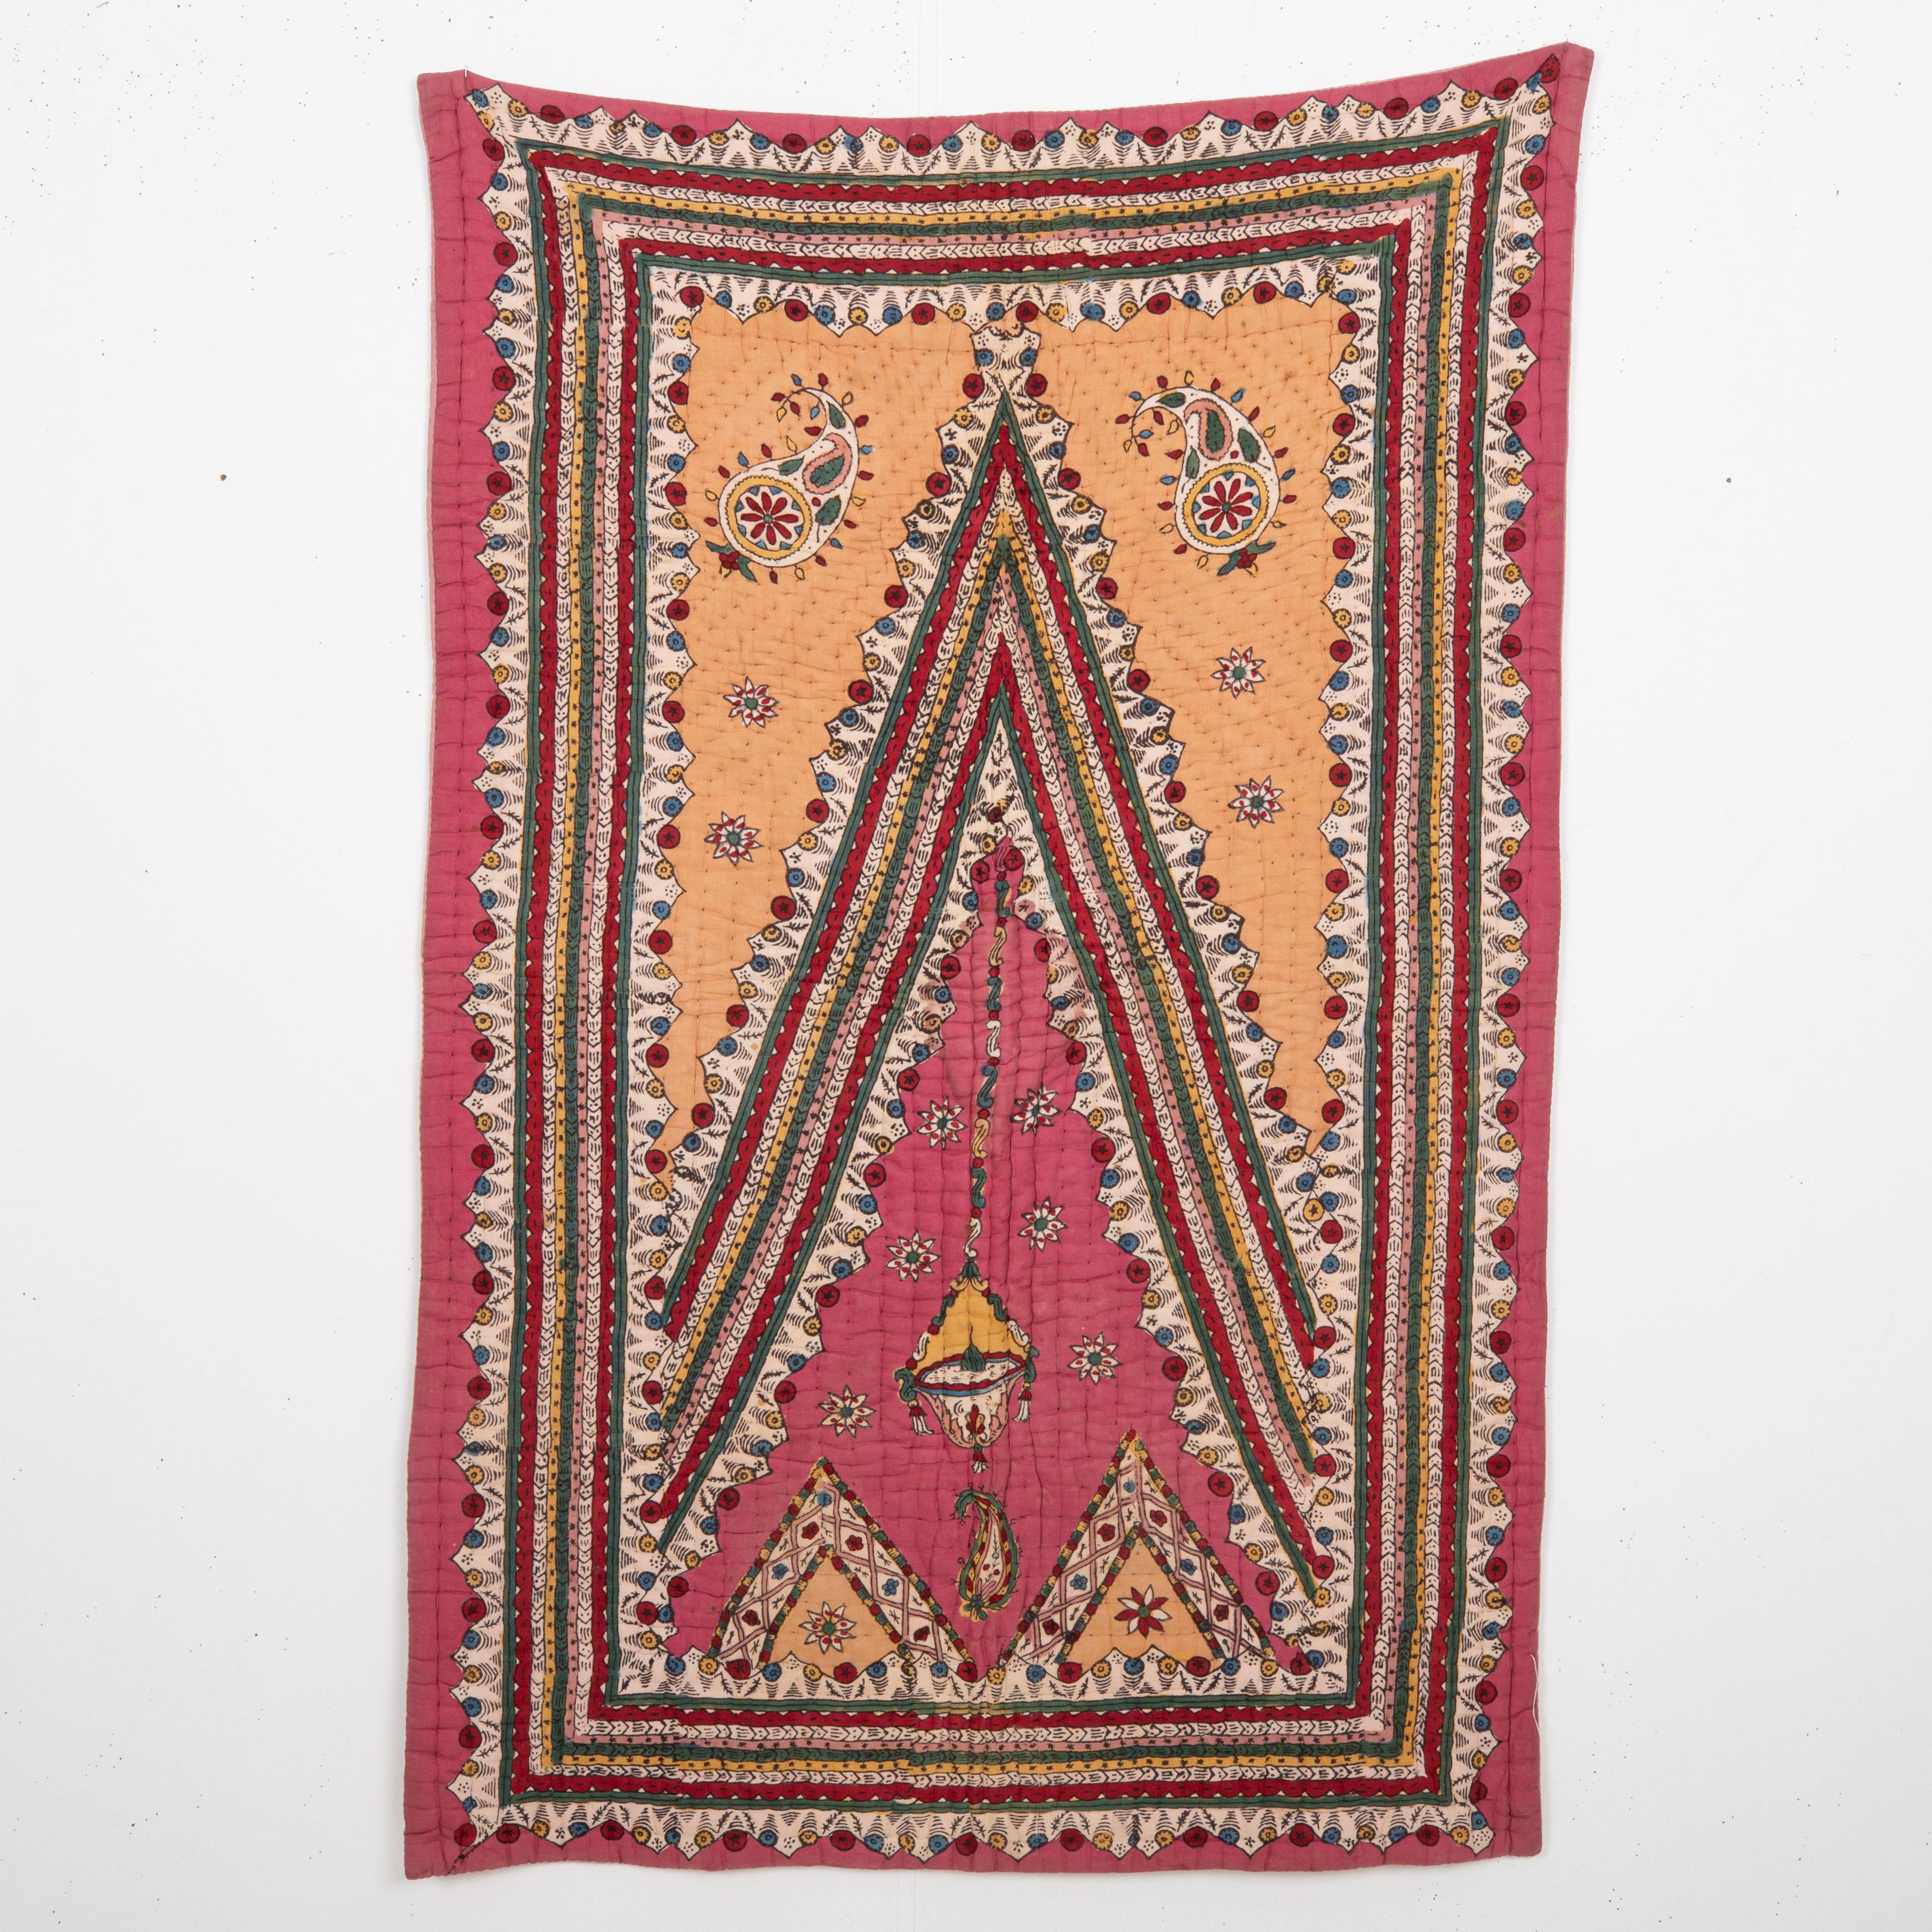 L'impression au bloc manuel est l'une des marques de la culture matérielle de l'Anatolie occidentale. Ces quilts ont été utilisés comme tapis de prière ou comme tentures murales.
